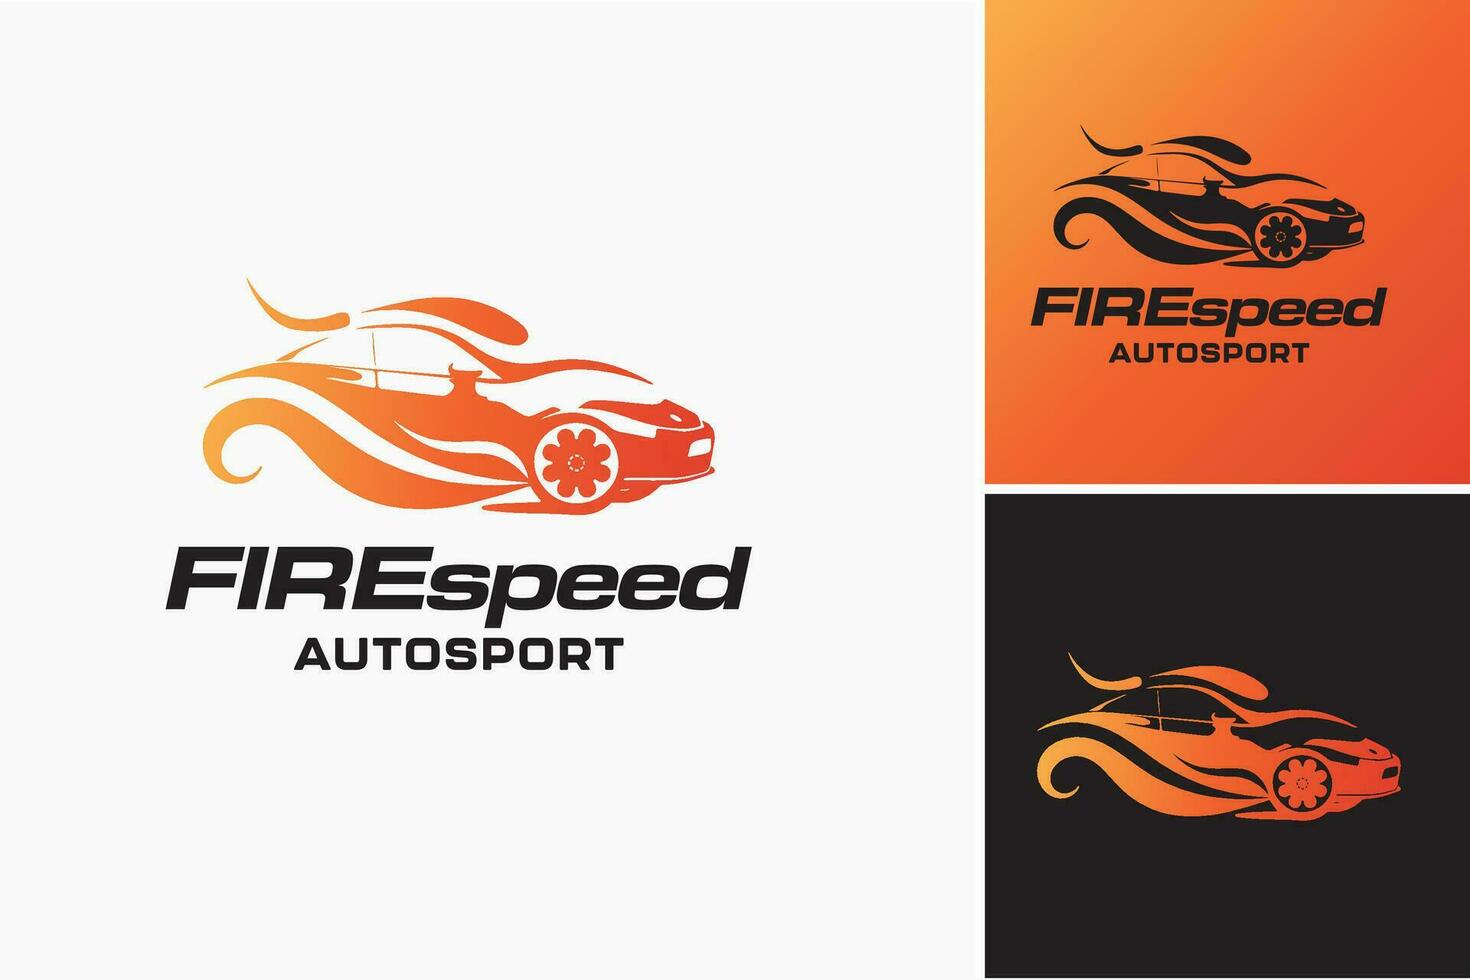 el logo para el propulsado por fuego auto es un dinámica y visualmente sorprendentes diseño activo adecuado para automotor empresas o marcas especializándose en propulsado por fuego vehículos vector